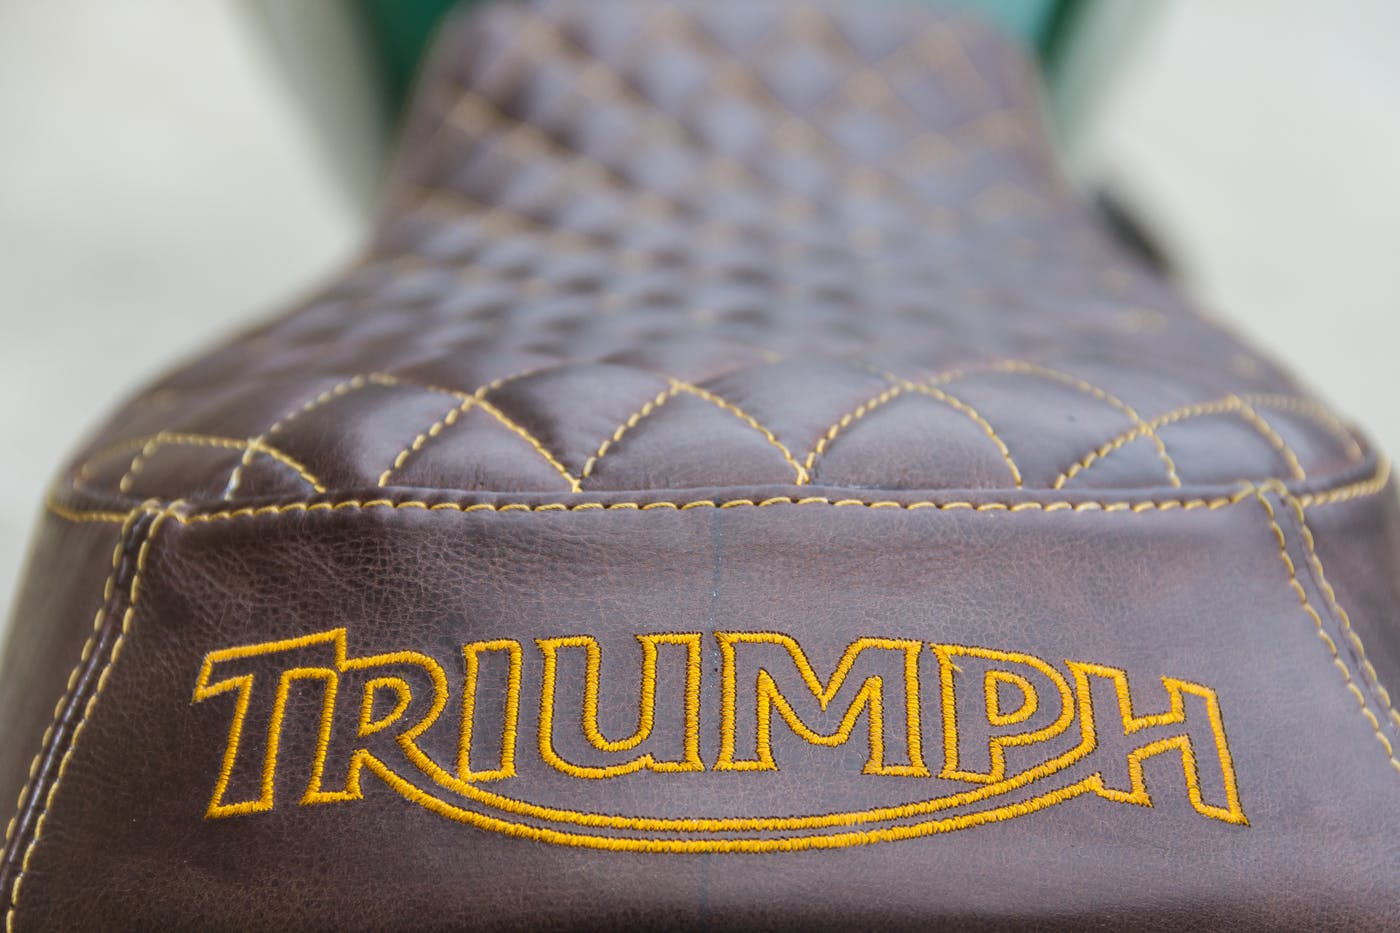 Triumph Scrambler by Greaser Garage